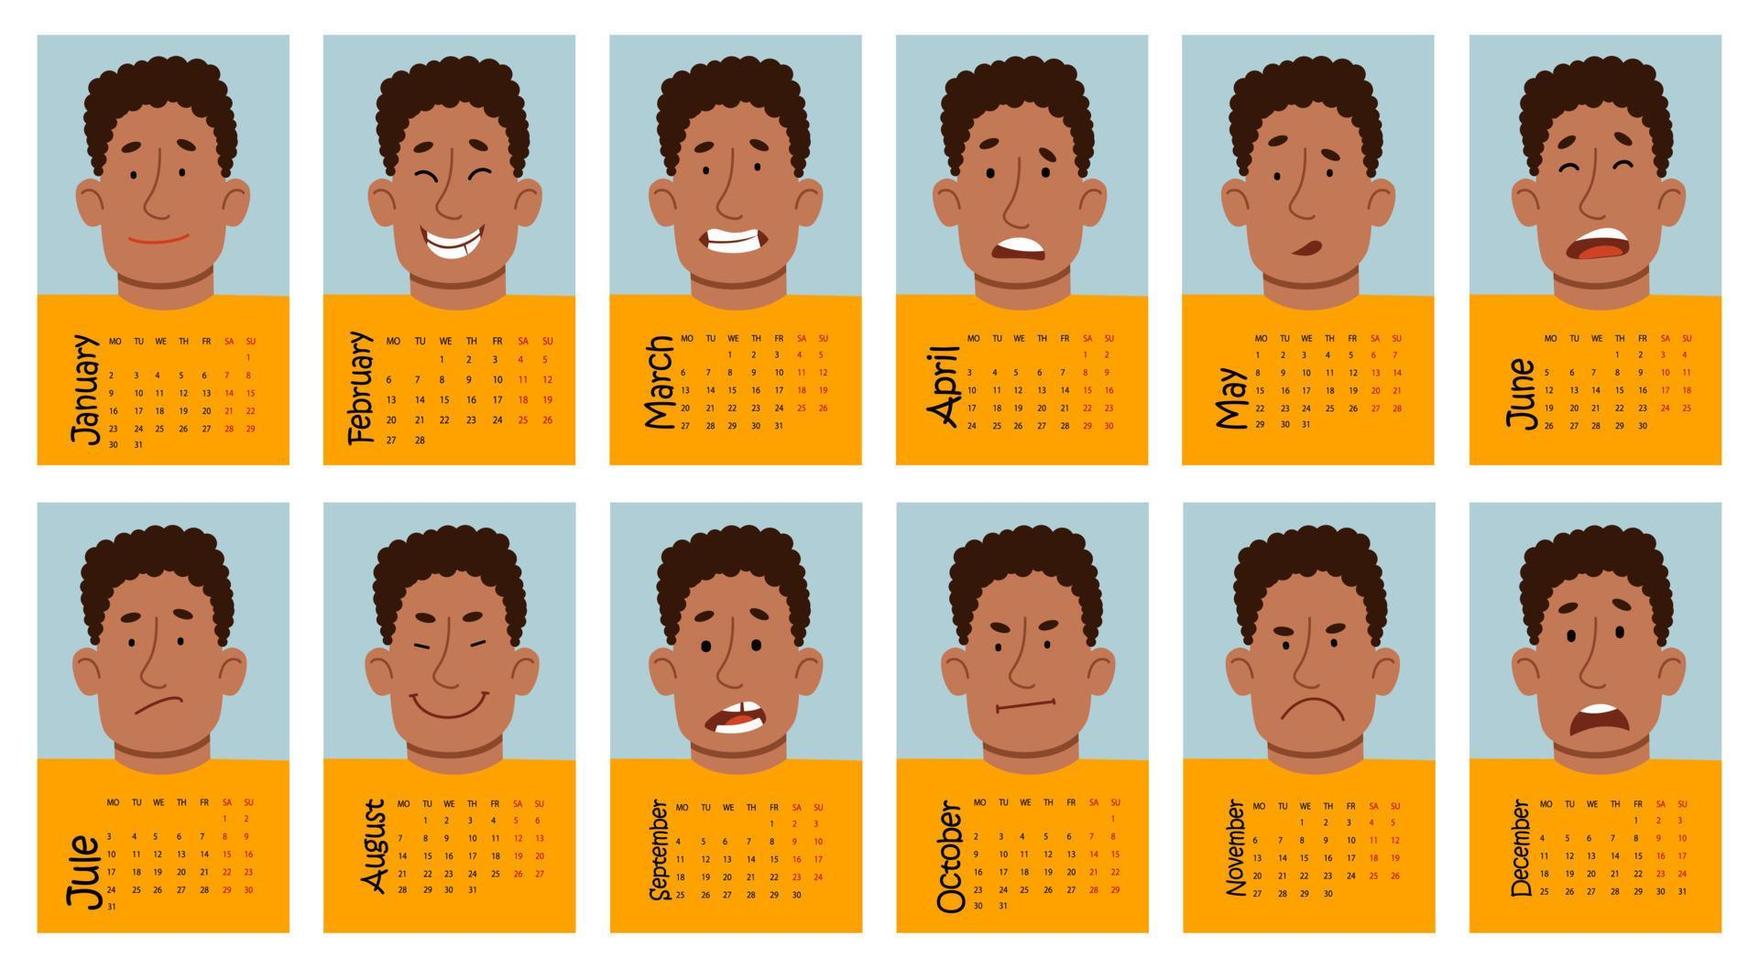 kalender für 2023 mit lustigen emotionen eines männlichen afroamerikanischen charakters. Vektorillustration eines flachen Designs. vektor